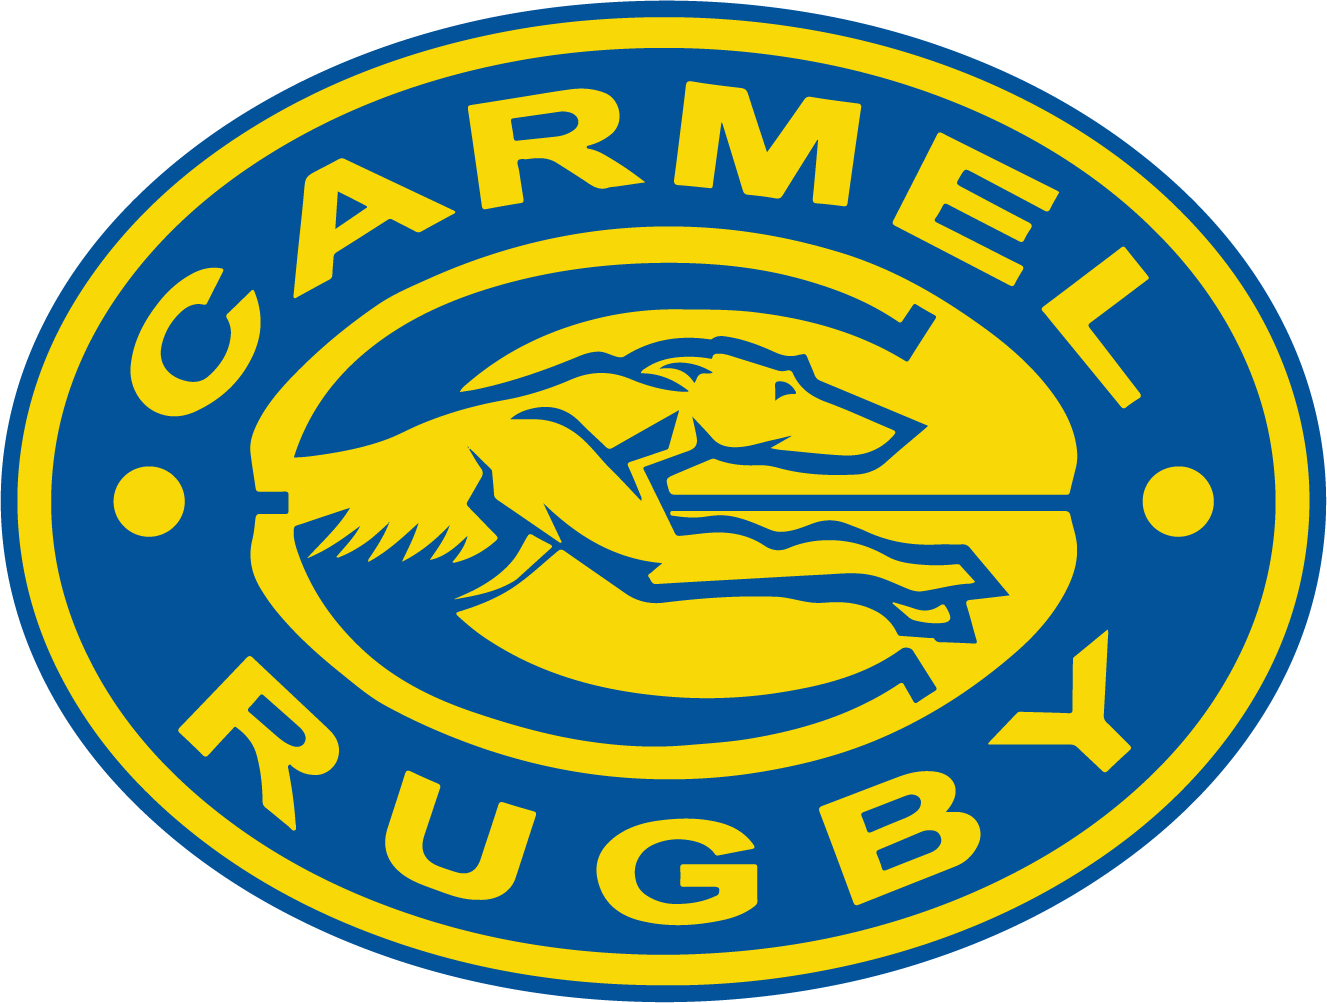 Carmel Rugby Club